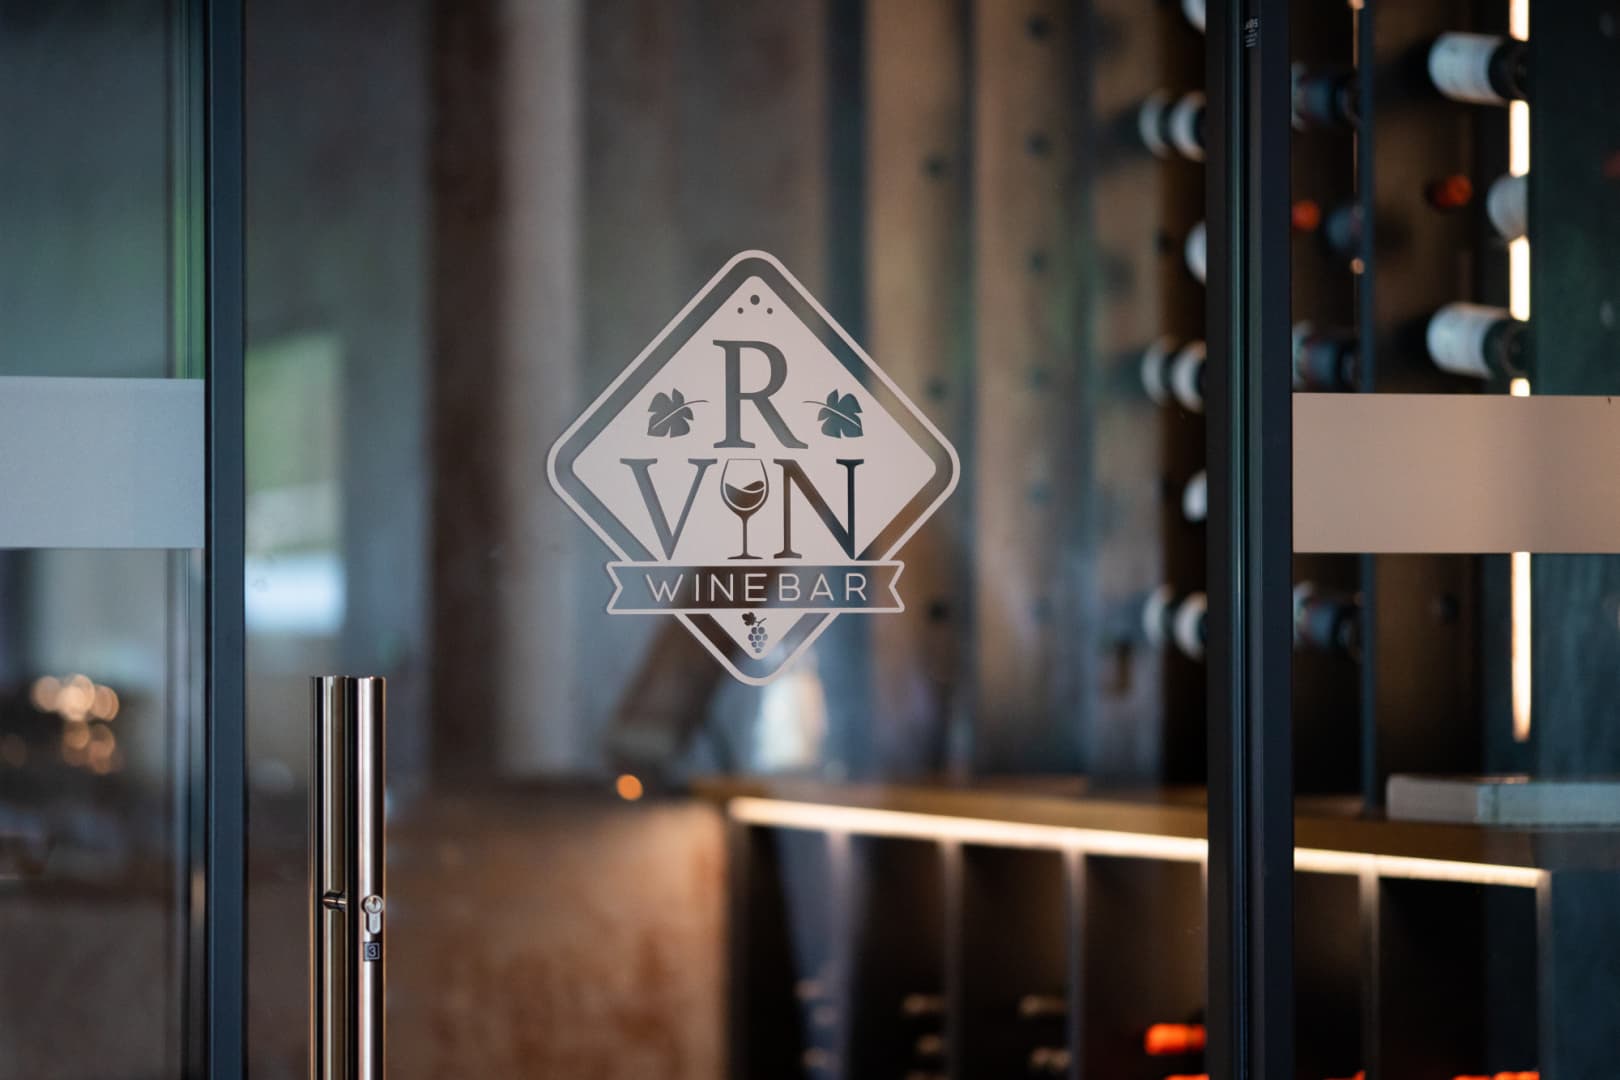 Legyen szó nagyszabású családi vagy céges rendezvényről, az R-VIN WINEBAR mostantól még színvonalasabb helyszínt biztosít!